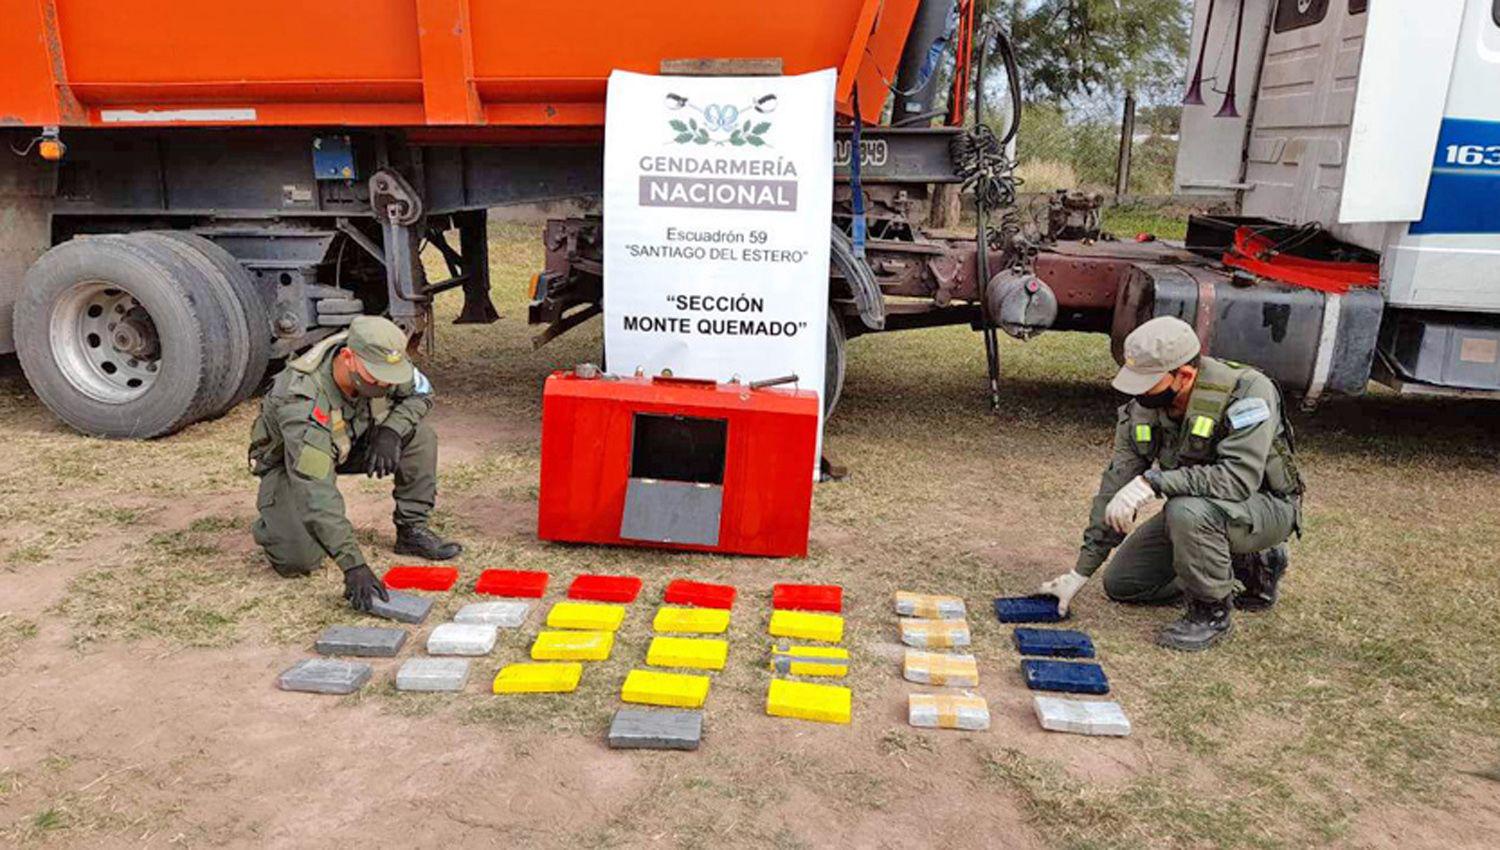 La cocaína era ingresada al país por la frontera entre Salta y Bolivia